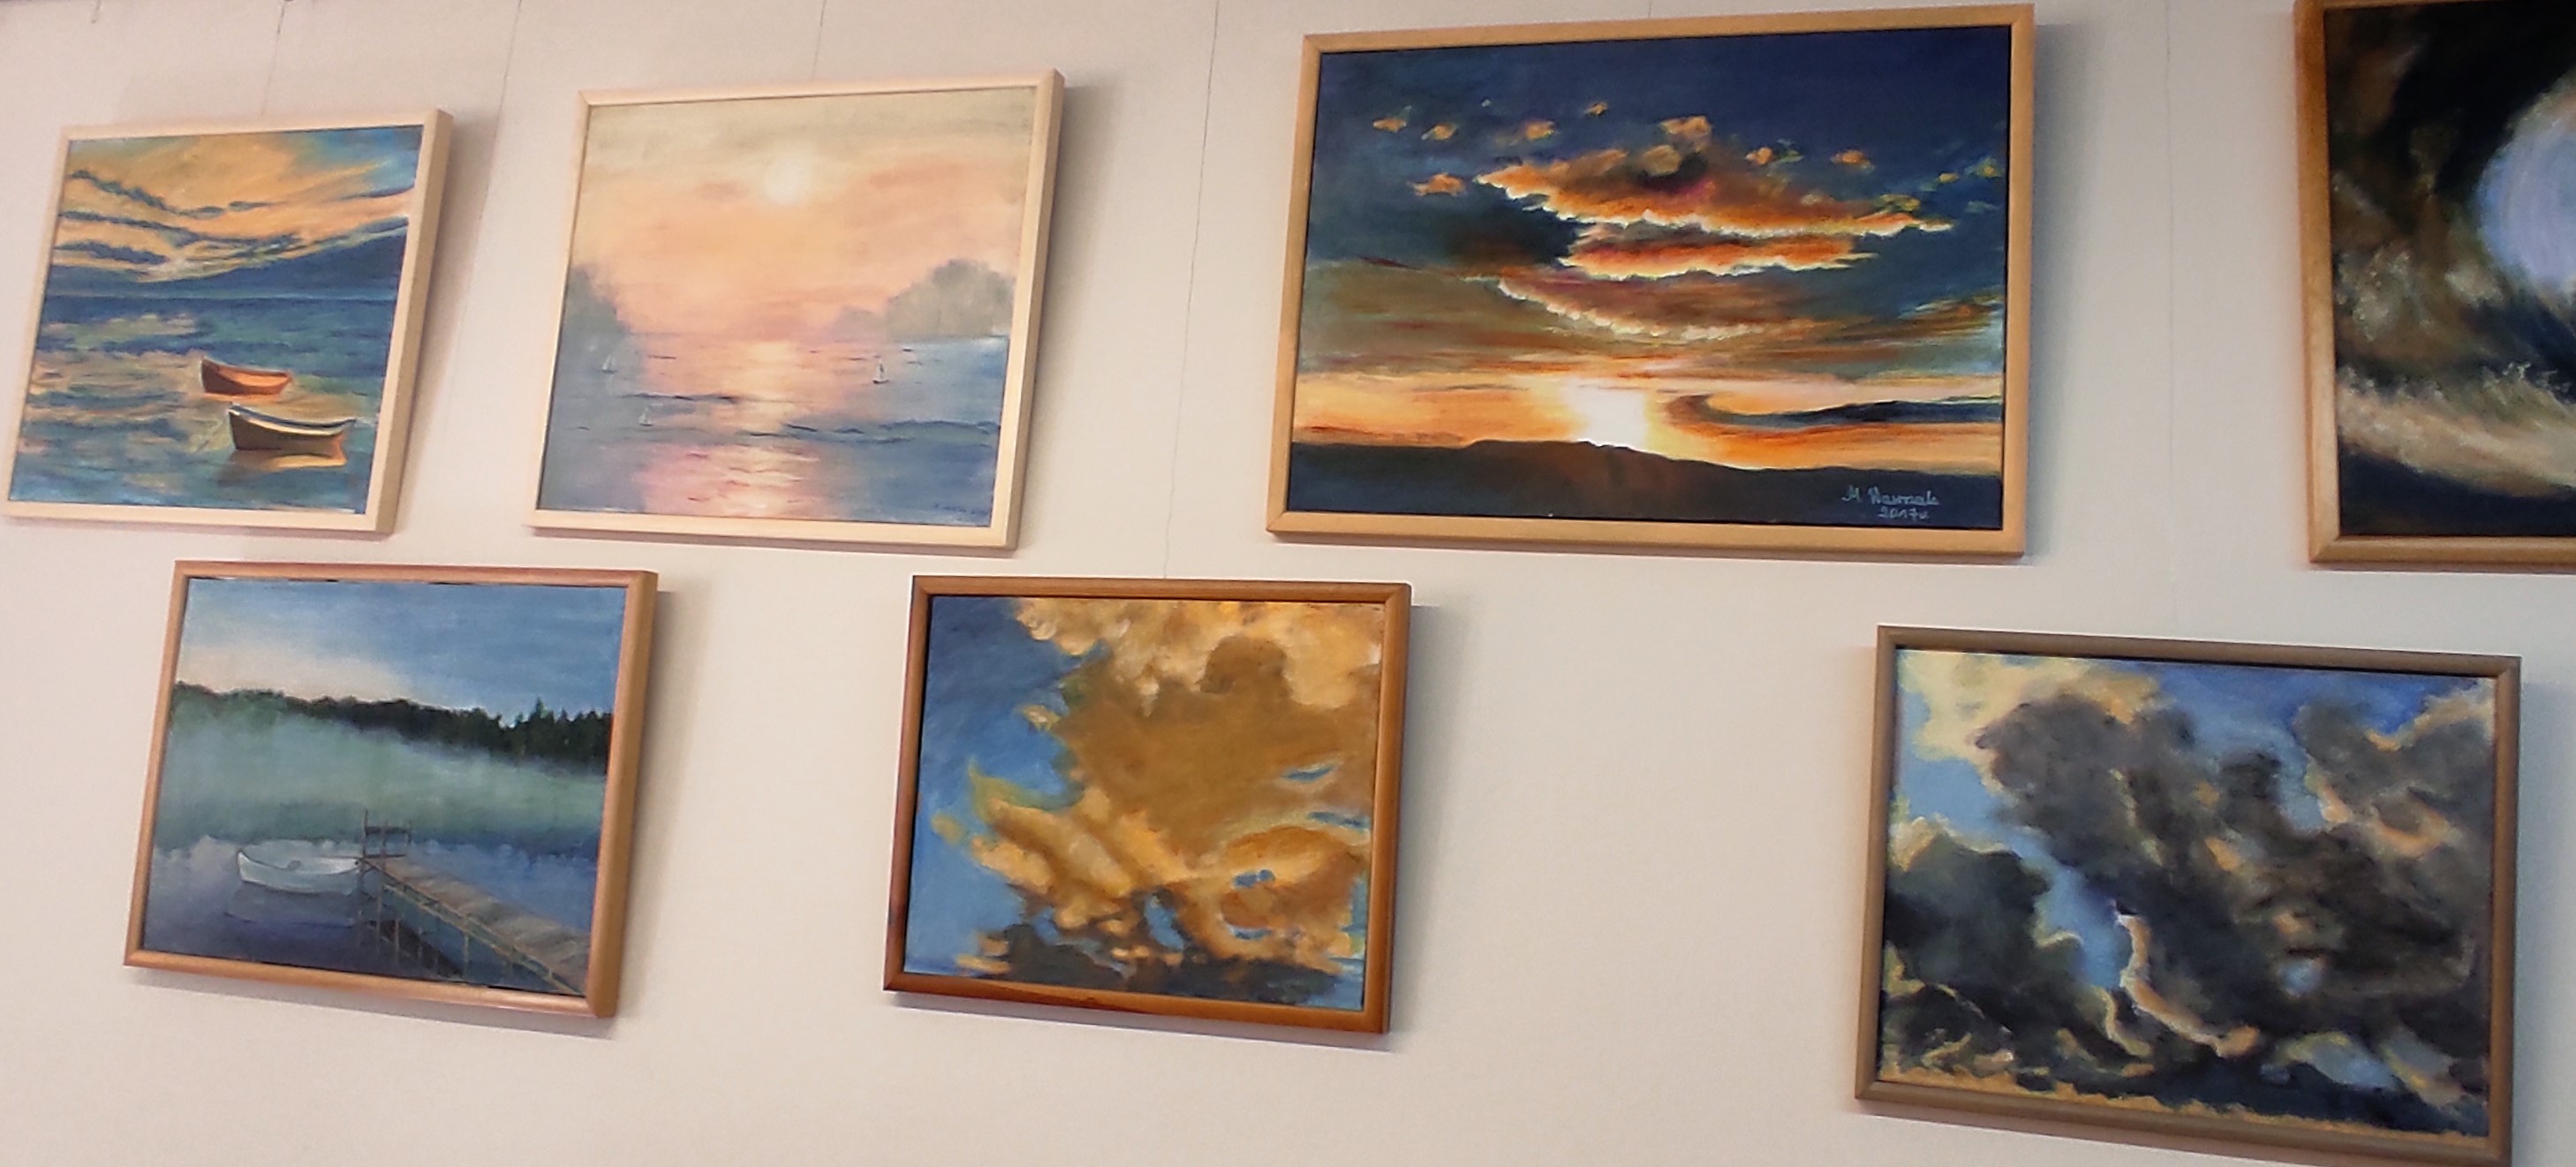 Obrazy przedstawiające morze, jeziora i chmury w kolorach beżowych, niebieskich, granatowych, oprawione w ramy